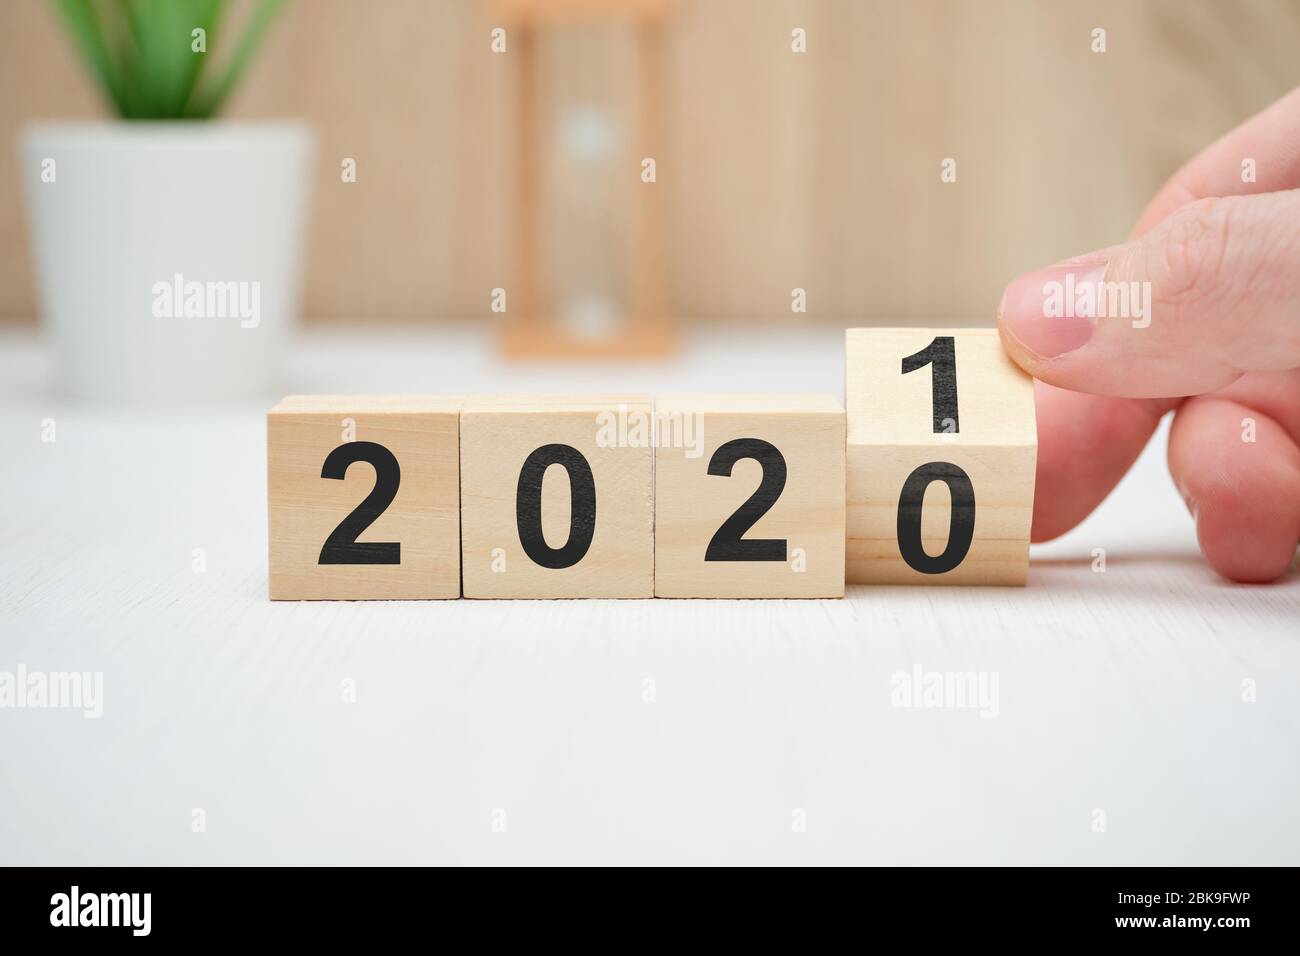 Das Konzept der Veränderung des Jahres von 2020 auf 2021 und die Ergebnisse der Operationen. Nahaufnahme. Stockfoto